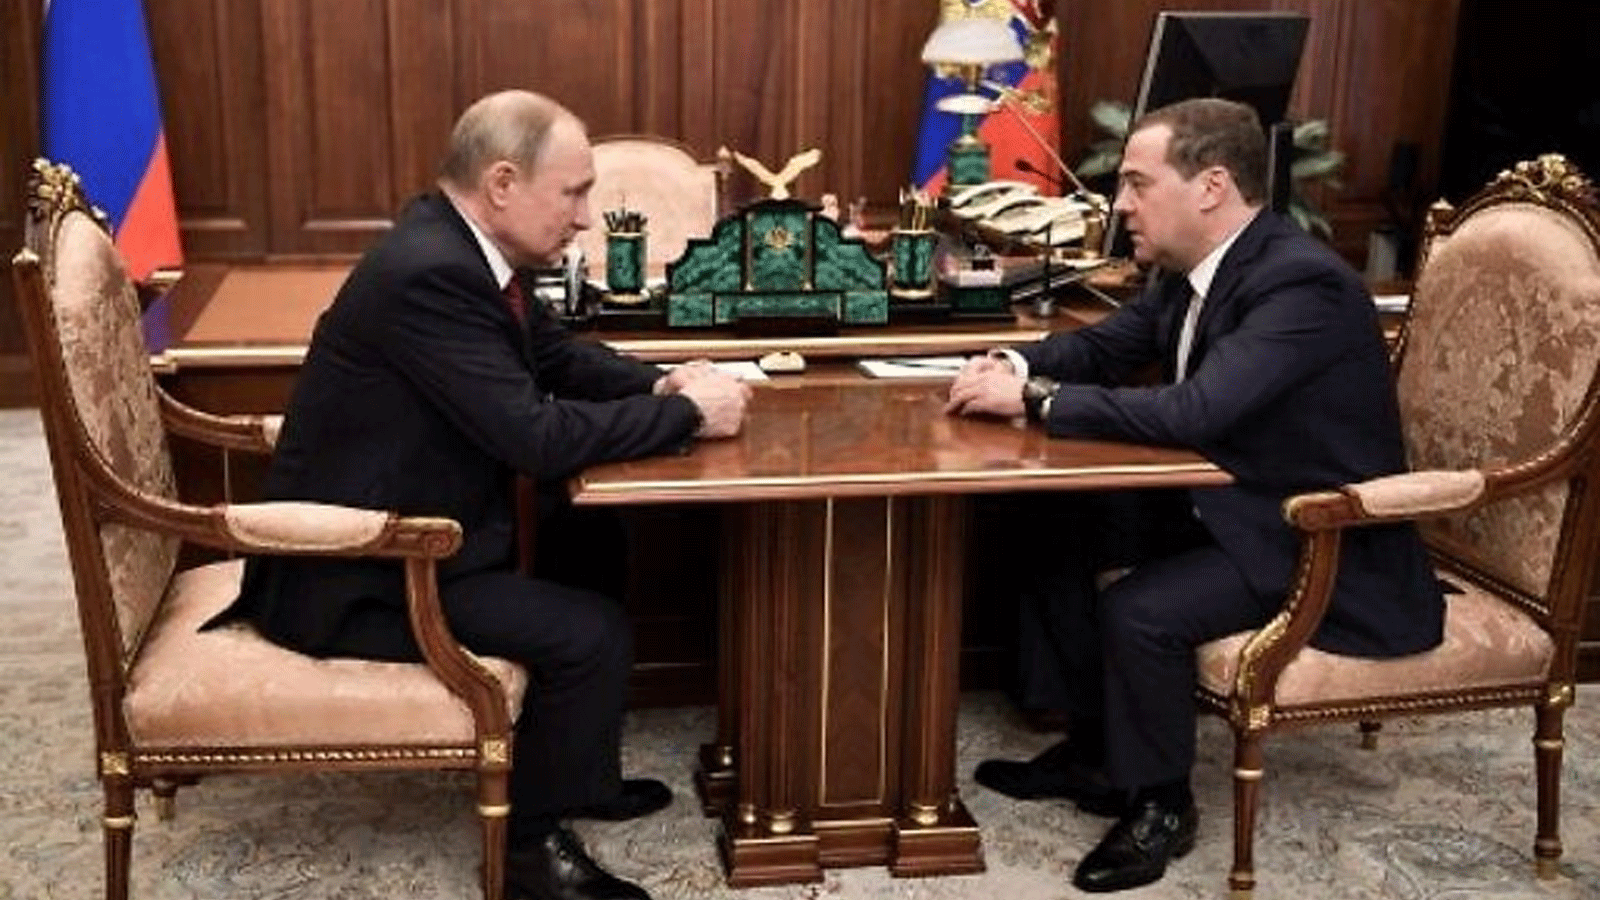 الرئيس الروسي فلاديمير بوتين (يسار) يلتقي برئيس الوزراء دميتري ميدفيديف في موسكو.15 كانون الثاني\يناير 2020